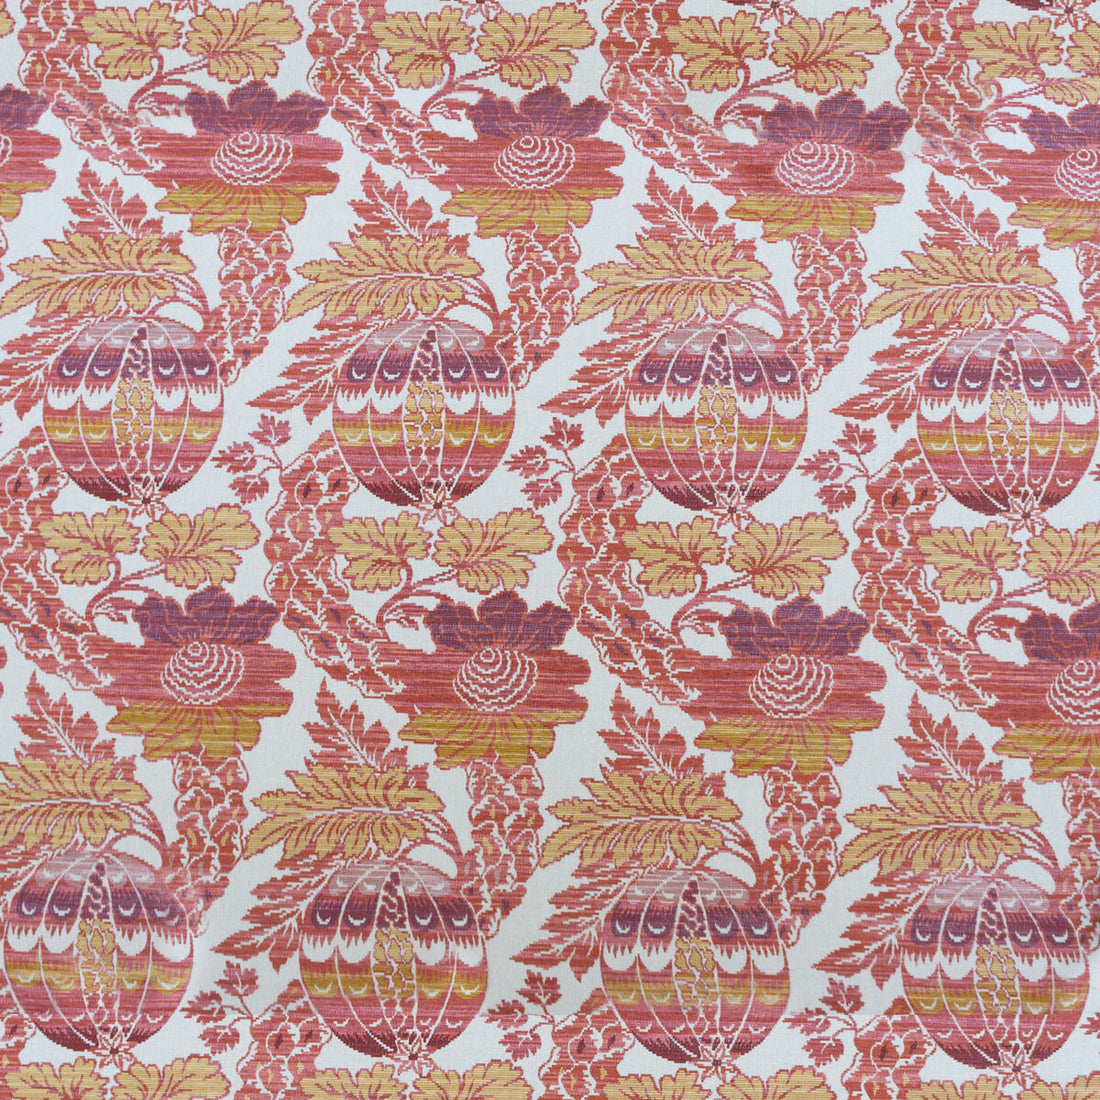 Alejandra fabric in rosa/amarillo color - pattern LCT1054.002.0 - by Gaston y Daniela in the Lorenzo Castillo VI collection